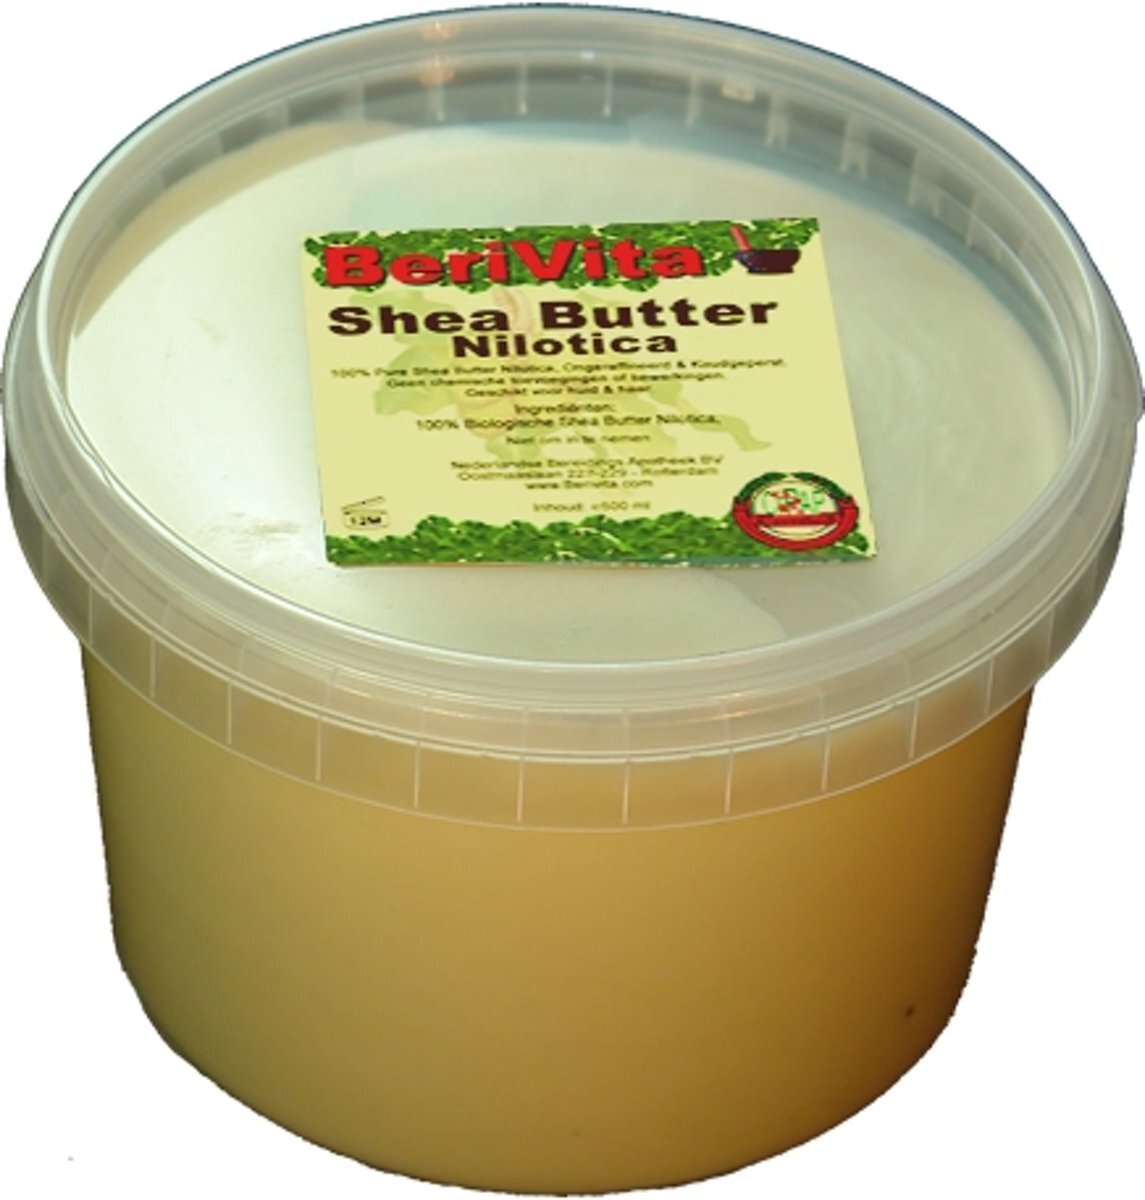 Berivita Shea Butter Nilotica Puur 500ml Pot 100% natuurlijk zacht & puur. Makkelijk smeerbaar en frisse vanille geur